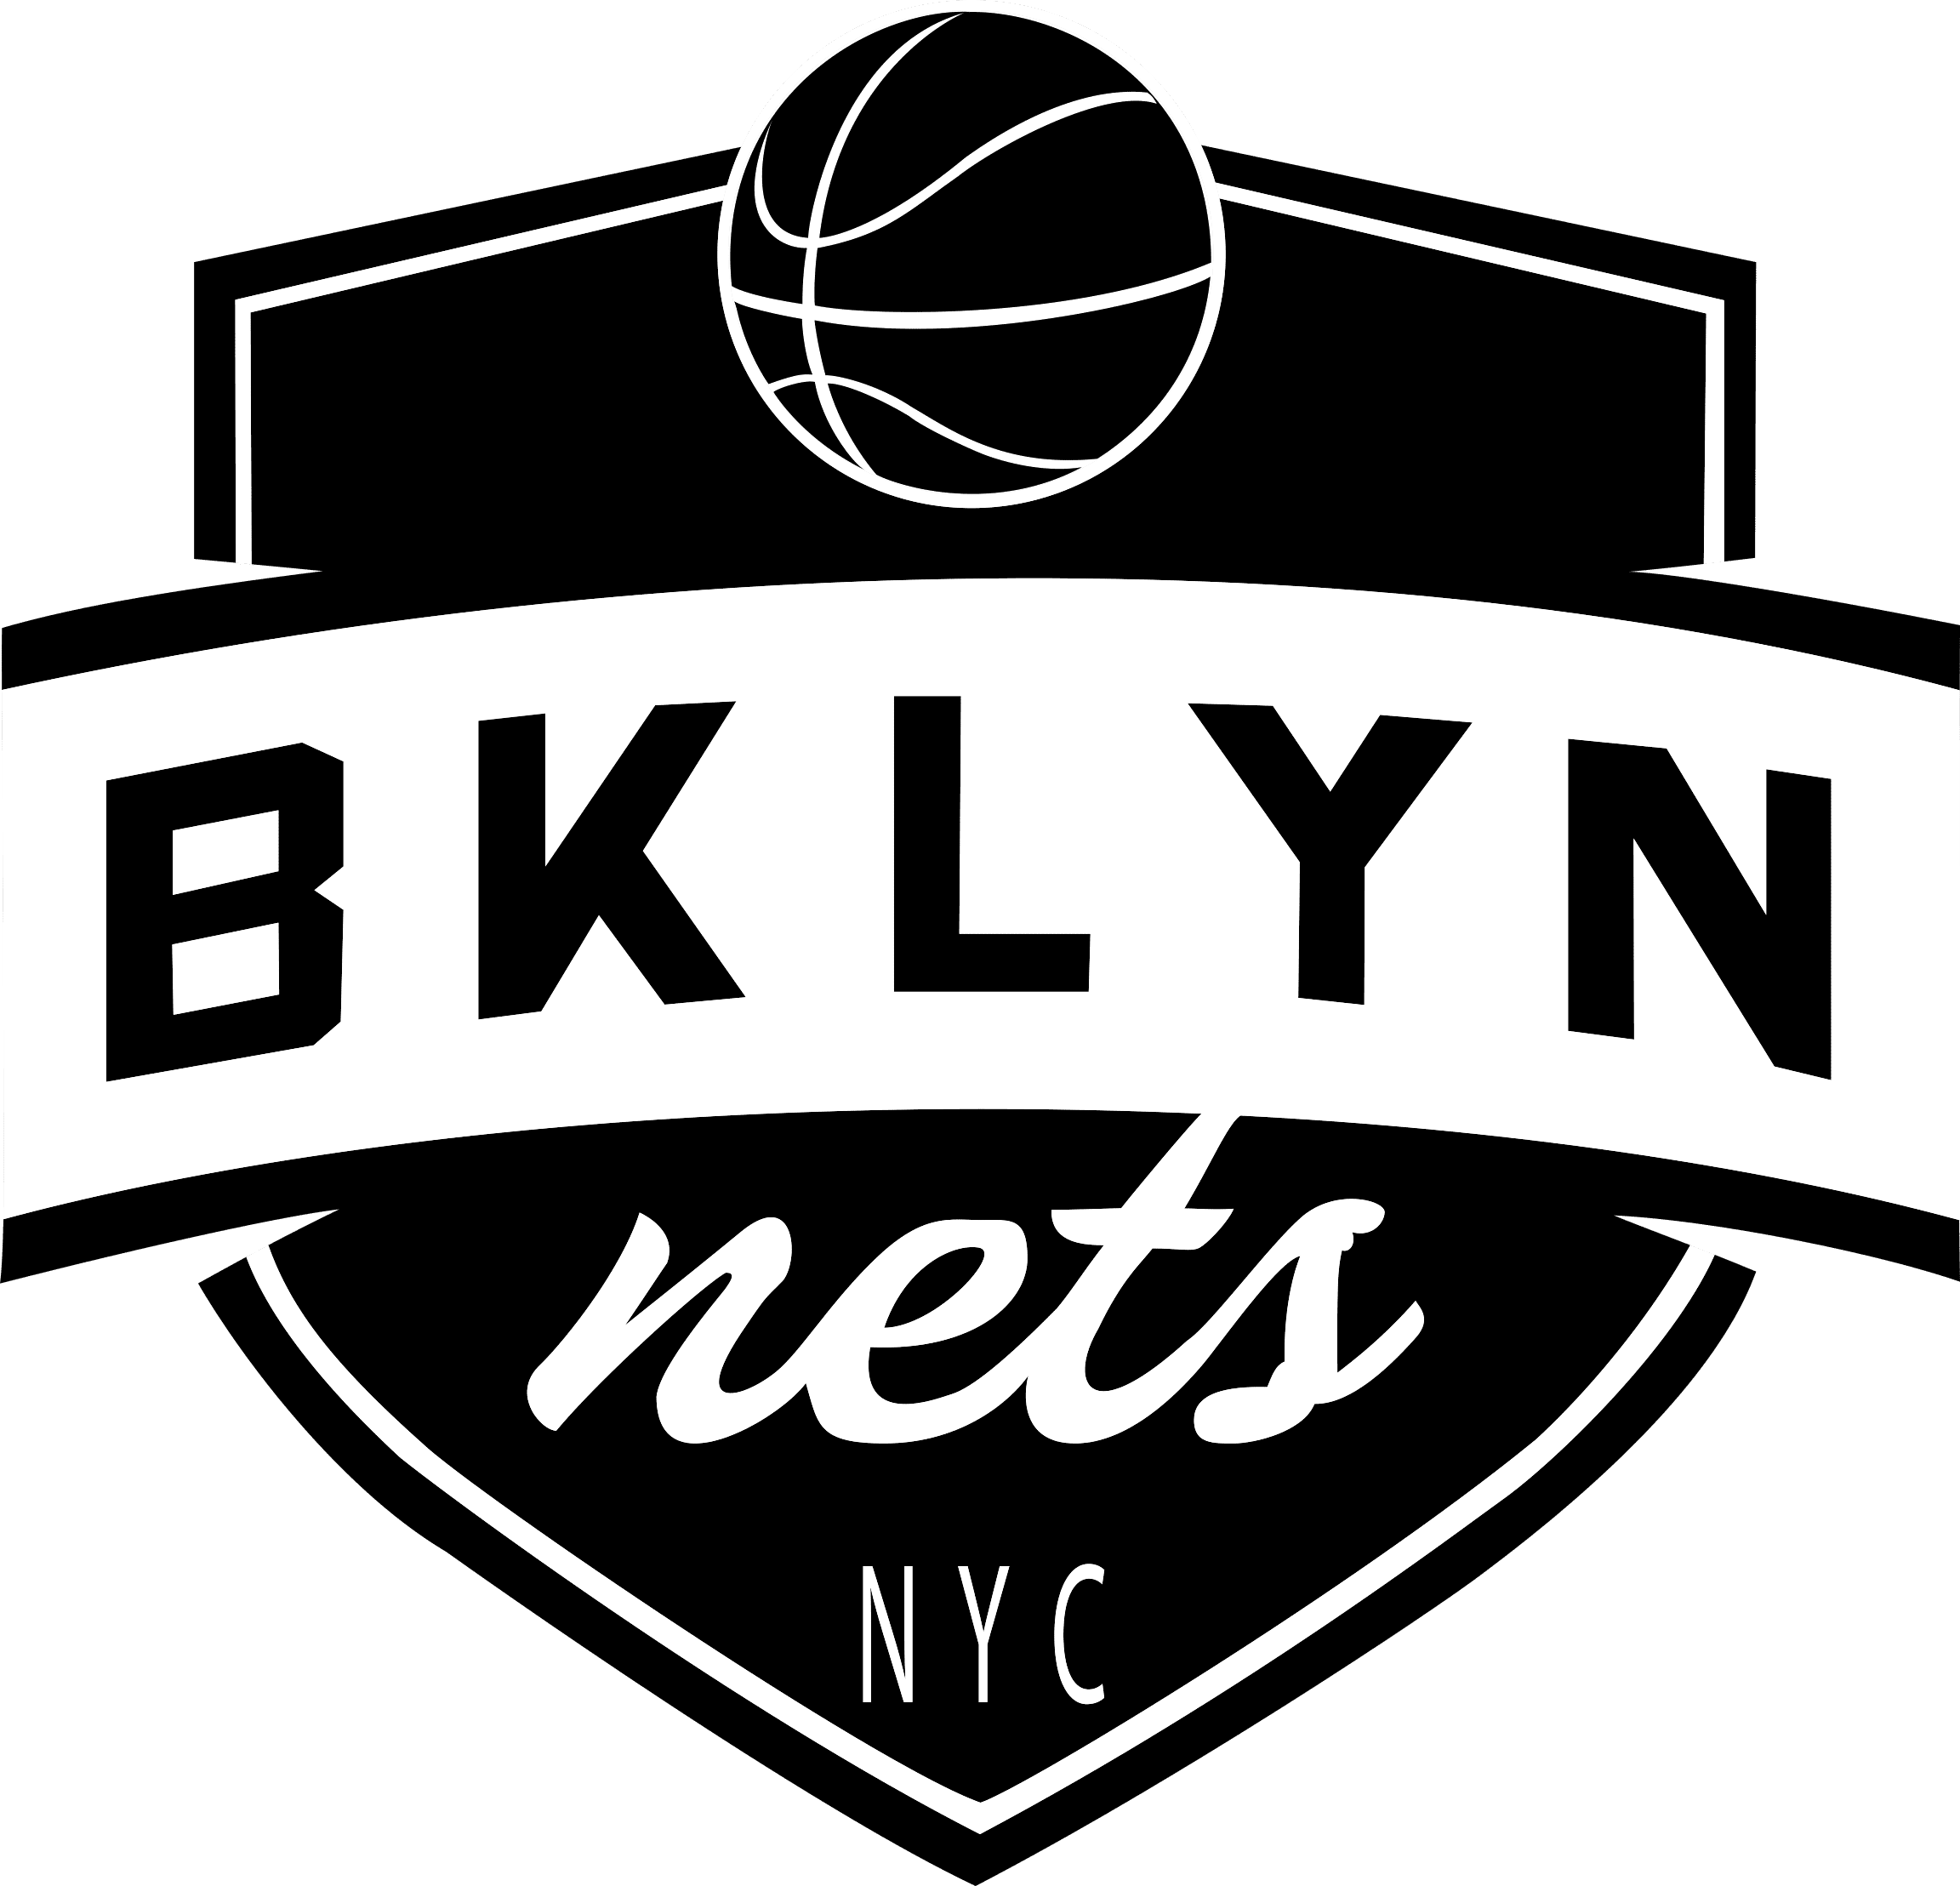 BROOKLYN NETS Official NBA Basketball Team Logo 22x34 Wall POSTER